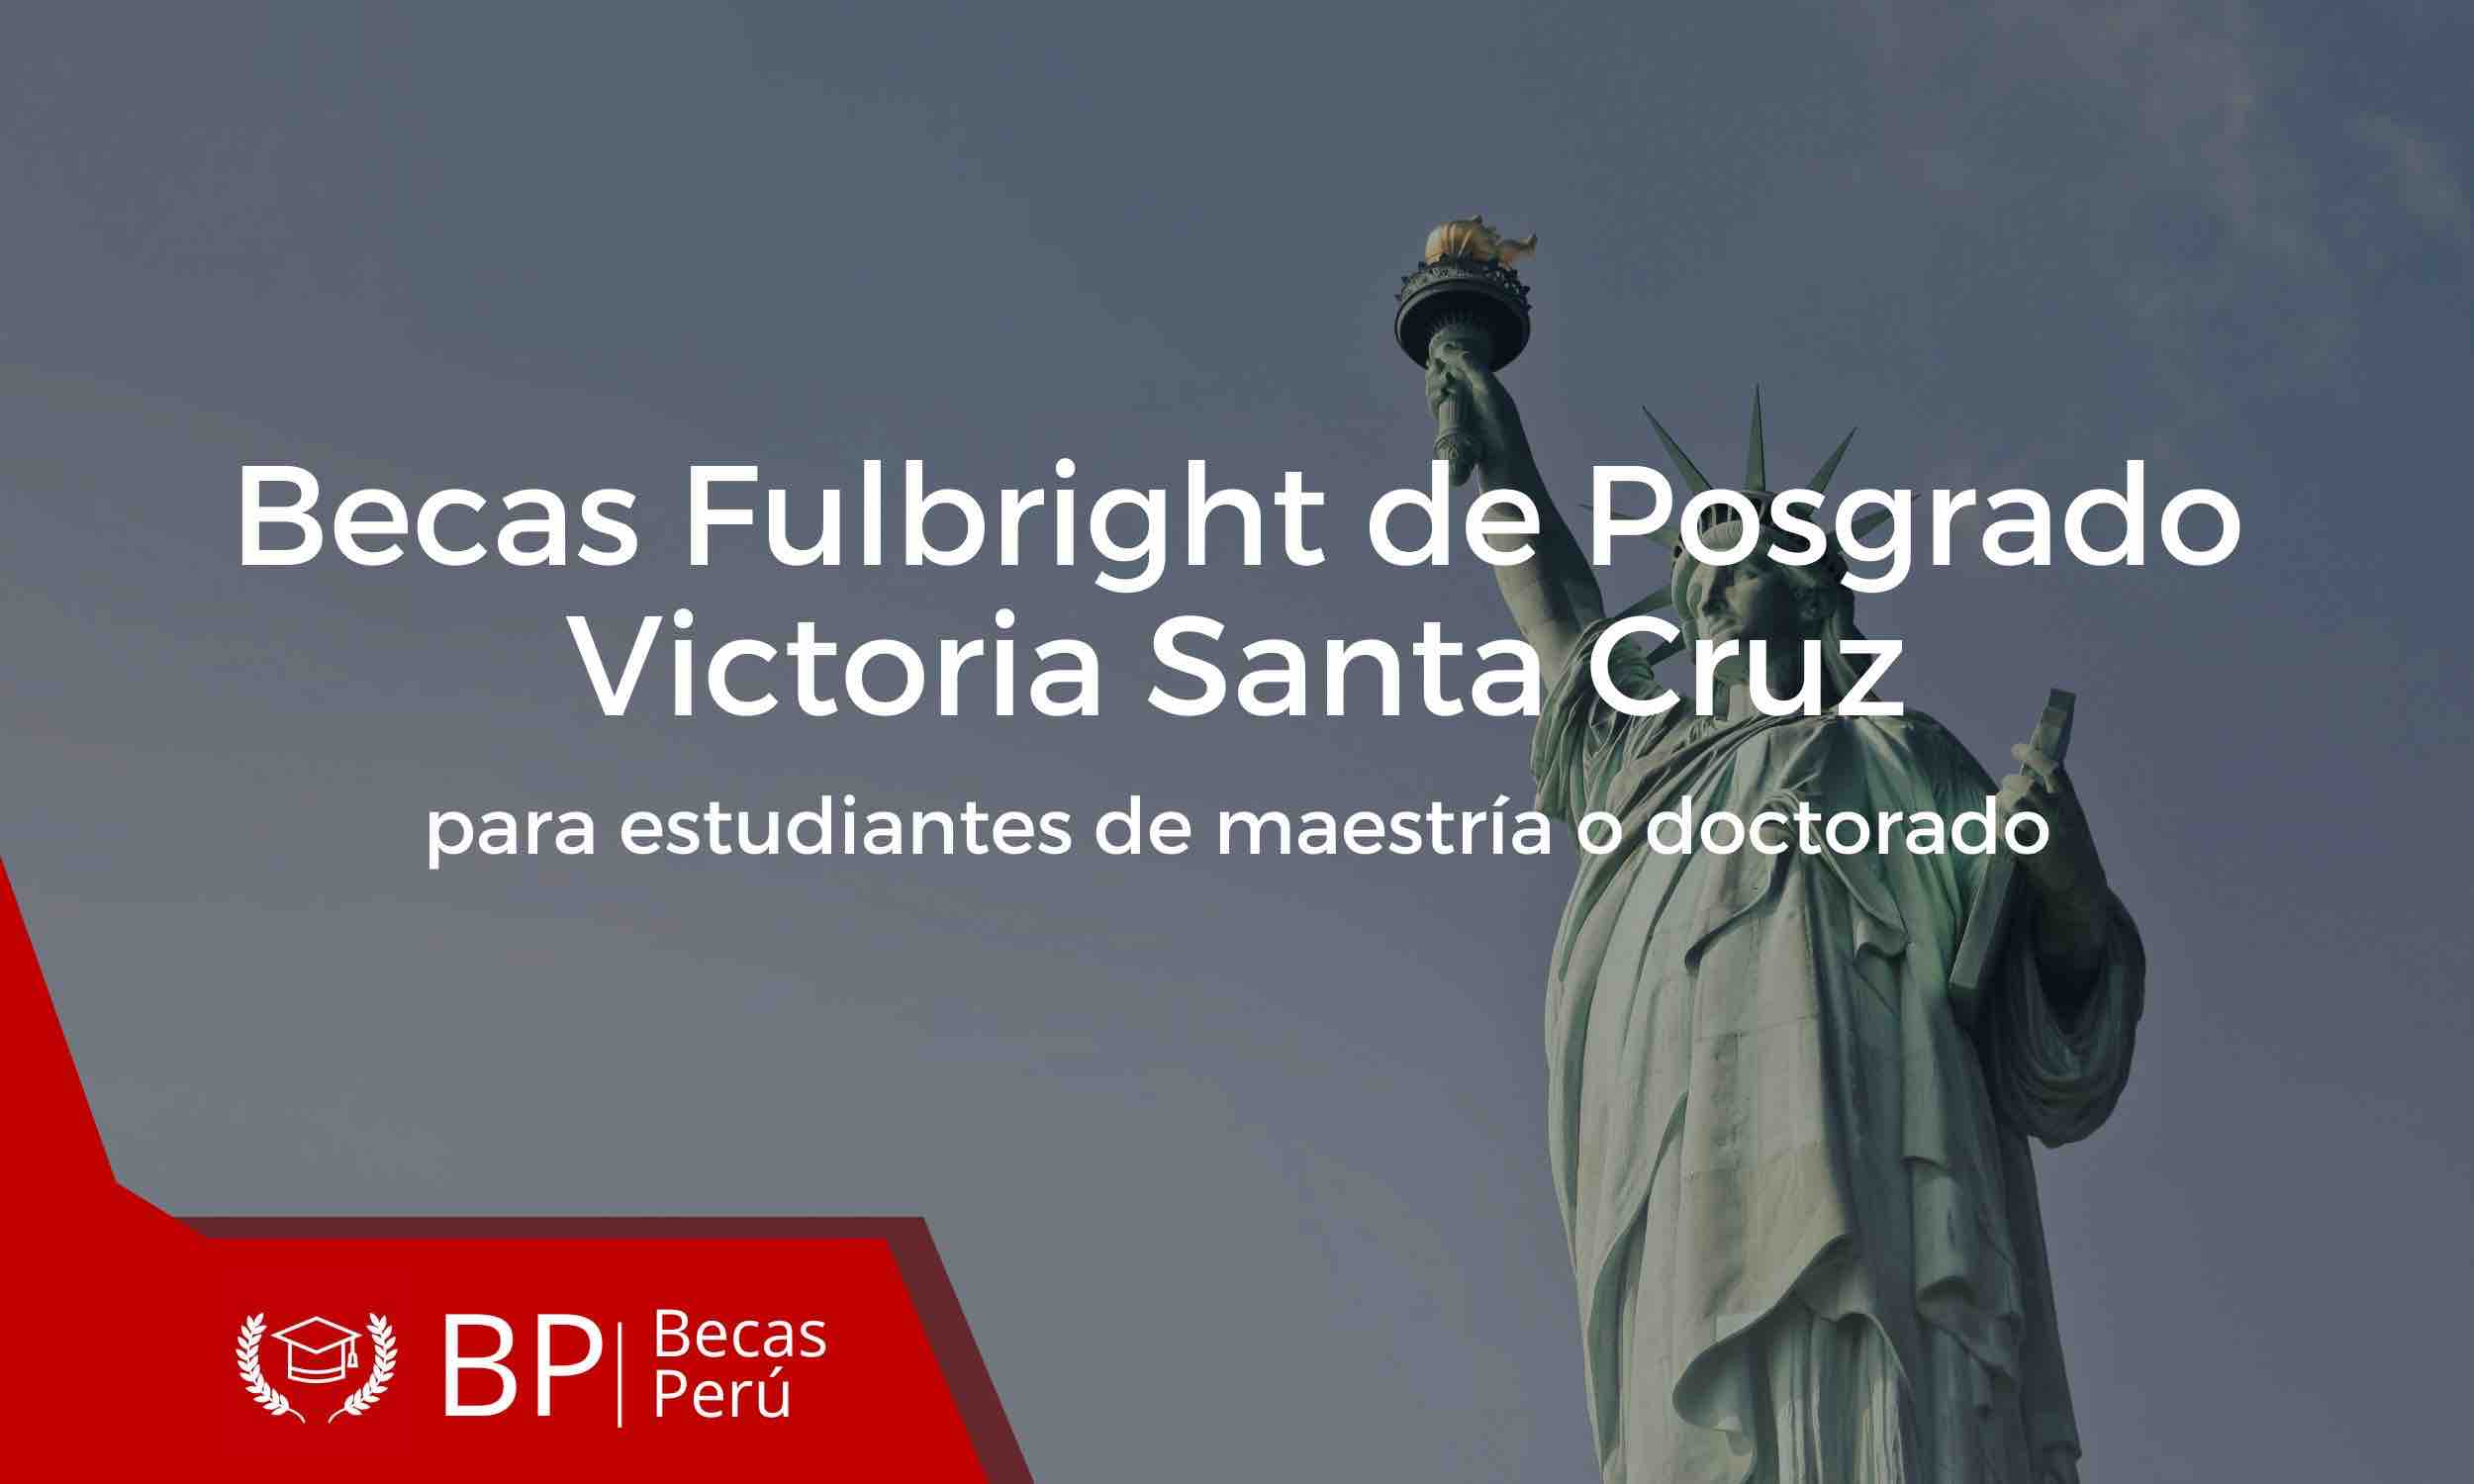 Becas Fulbright de posgrado Victoria Santa Cruz para estudiantes de maestría o doctorado